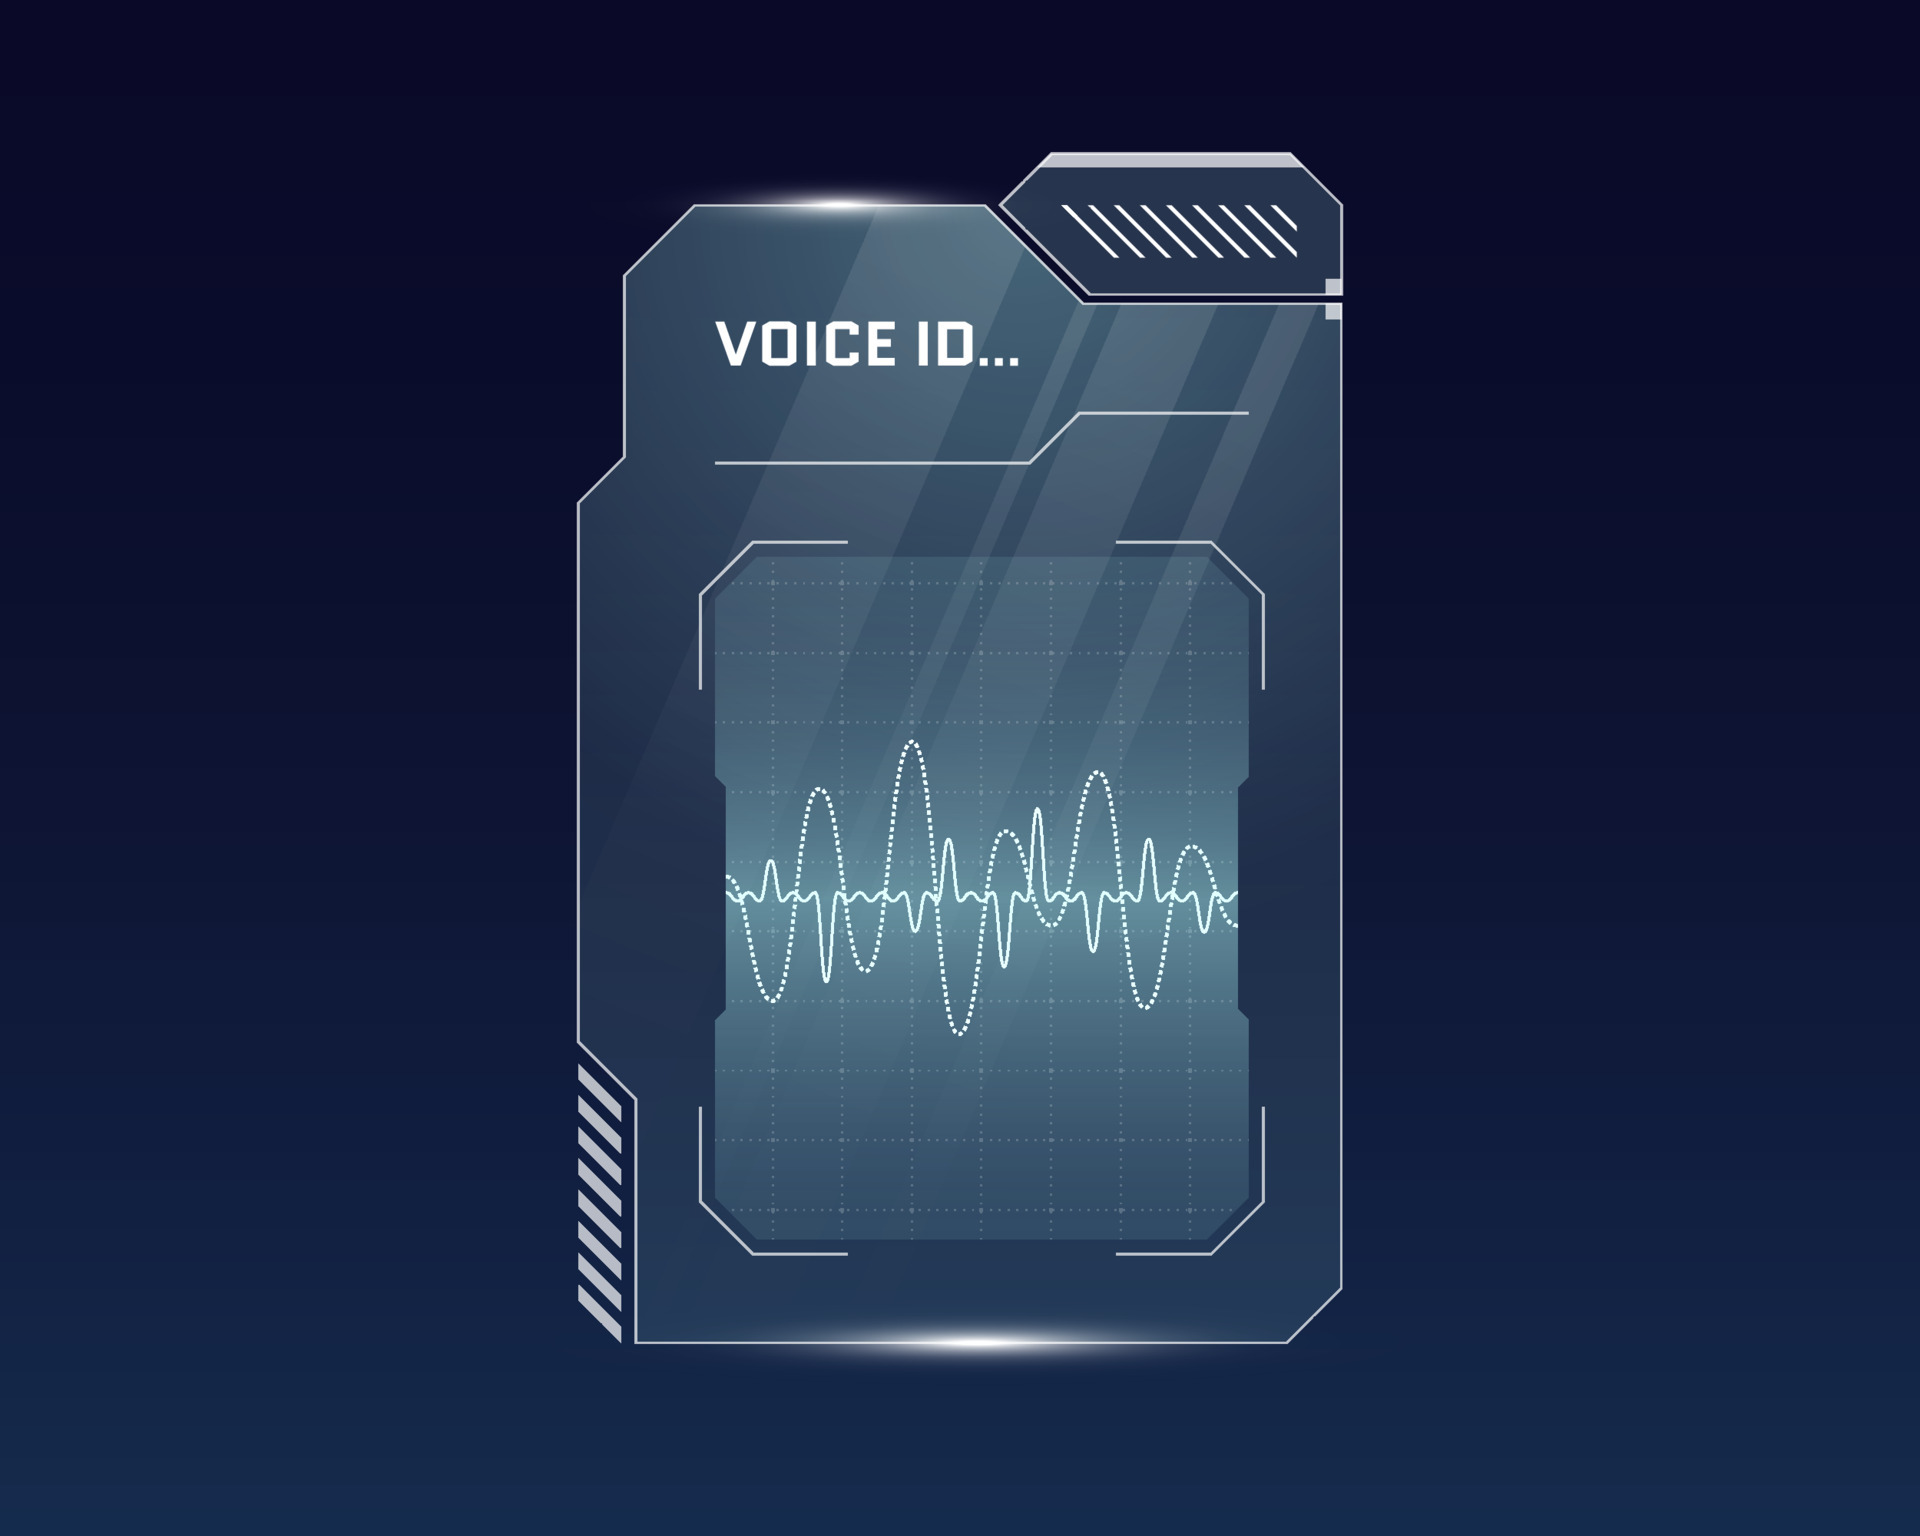 Voice interface